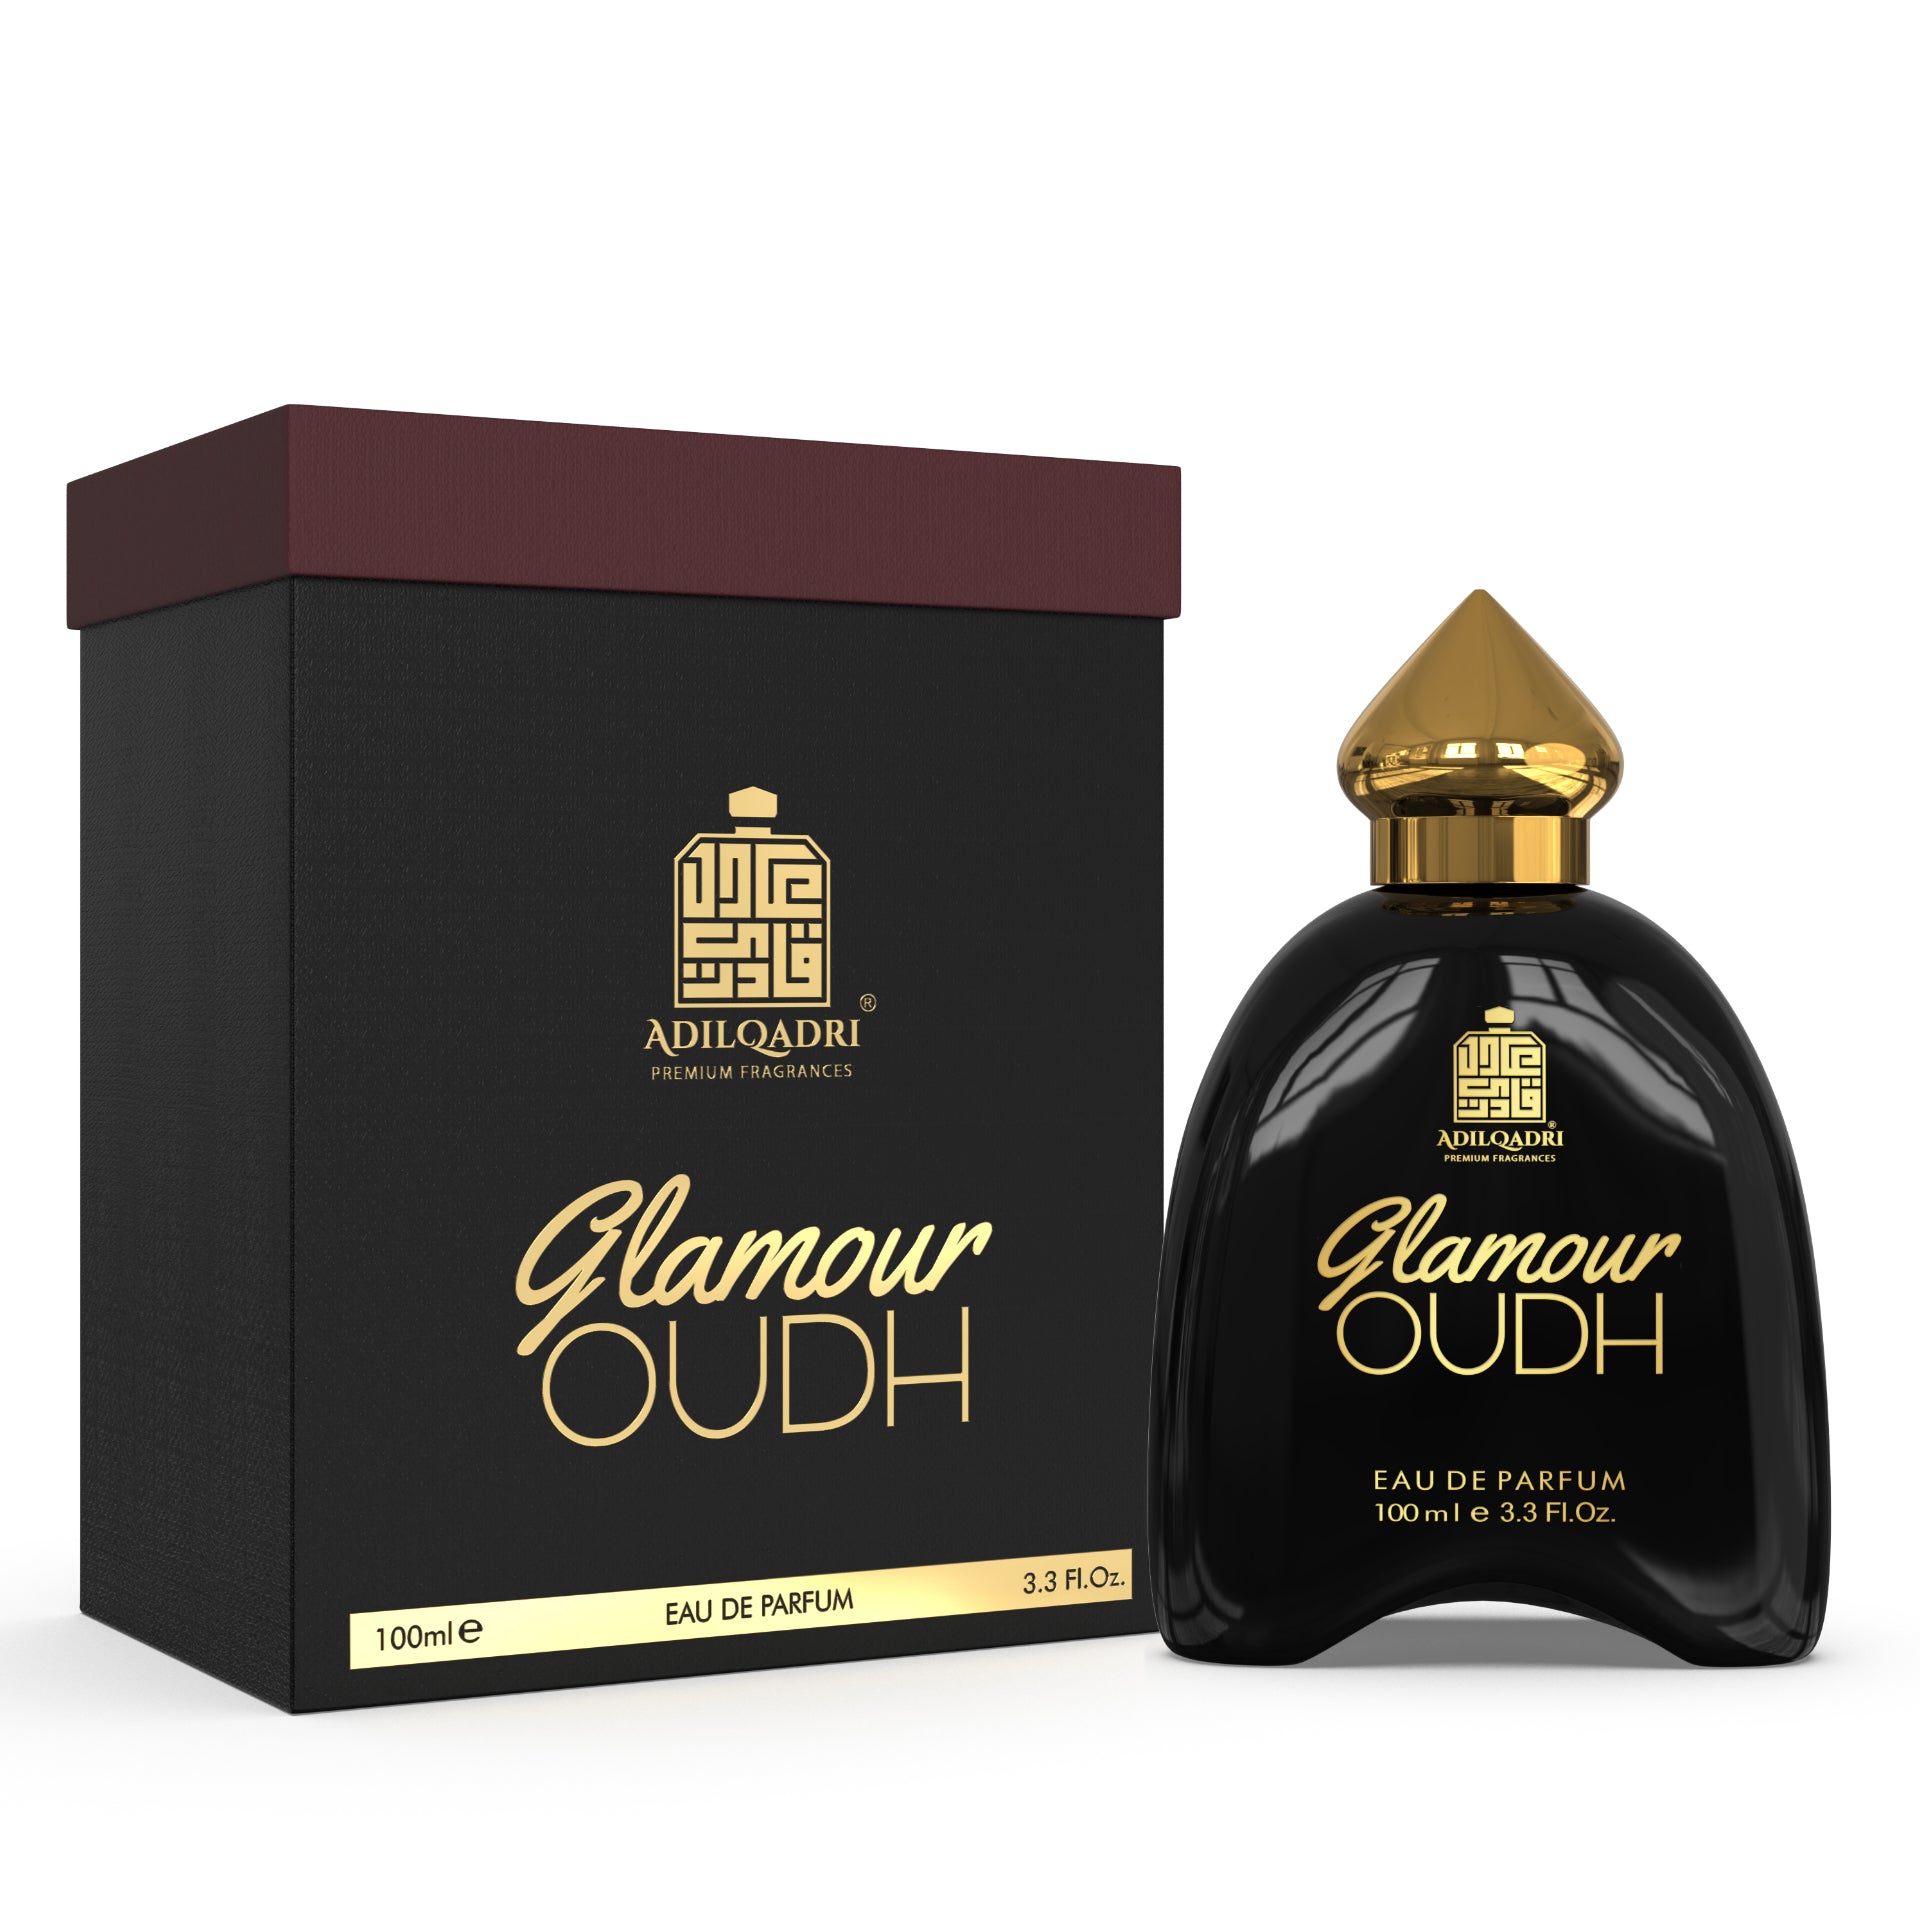 LOT OF 29 - Women's Men's Perfumes Fragrances EDT Eau de Parfum - *NO  REPEATS* $32.99 - PicClick